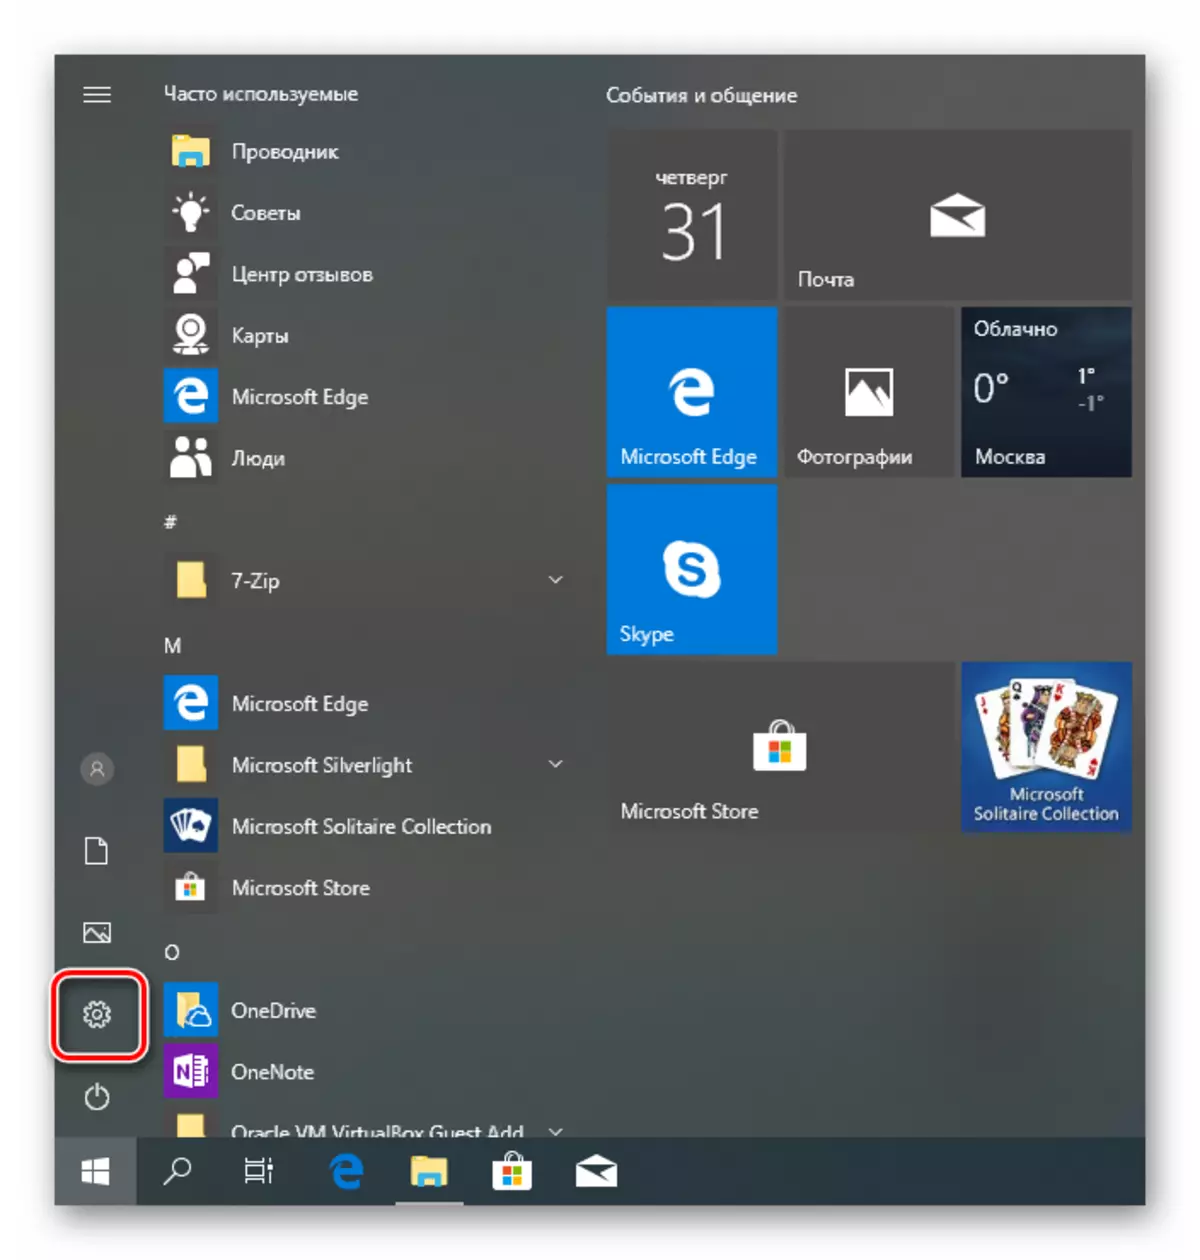 Vaya a los parámetros del sistema operativo desde el menú Inicio en Windows 10